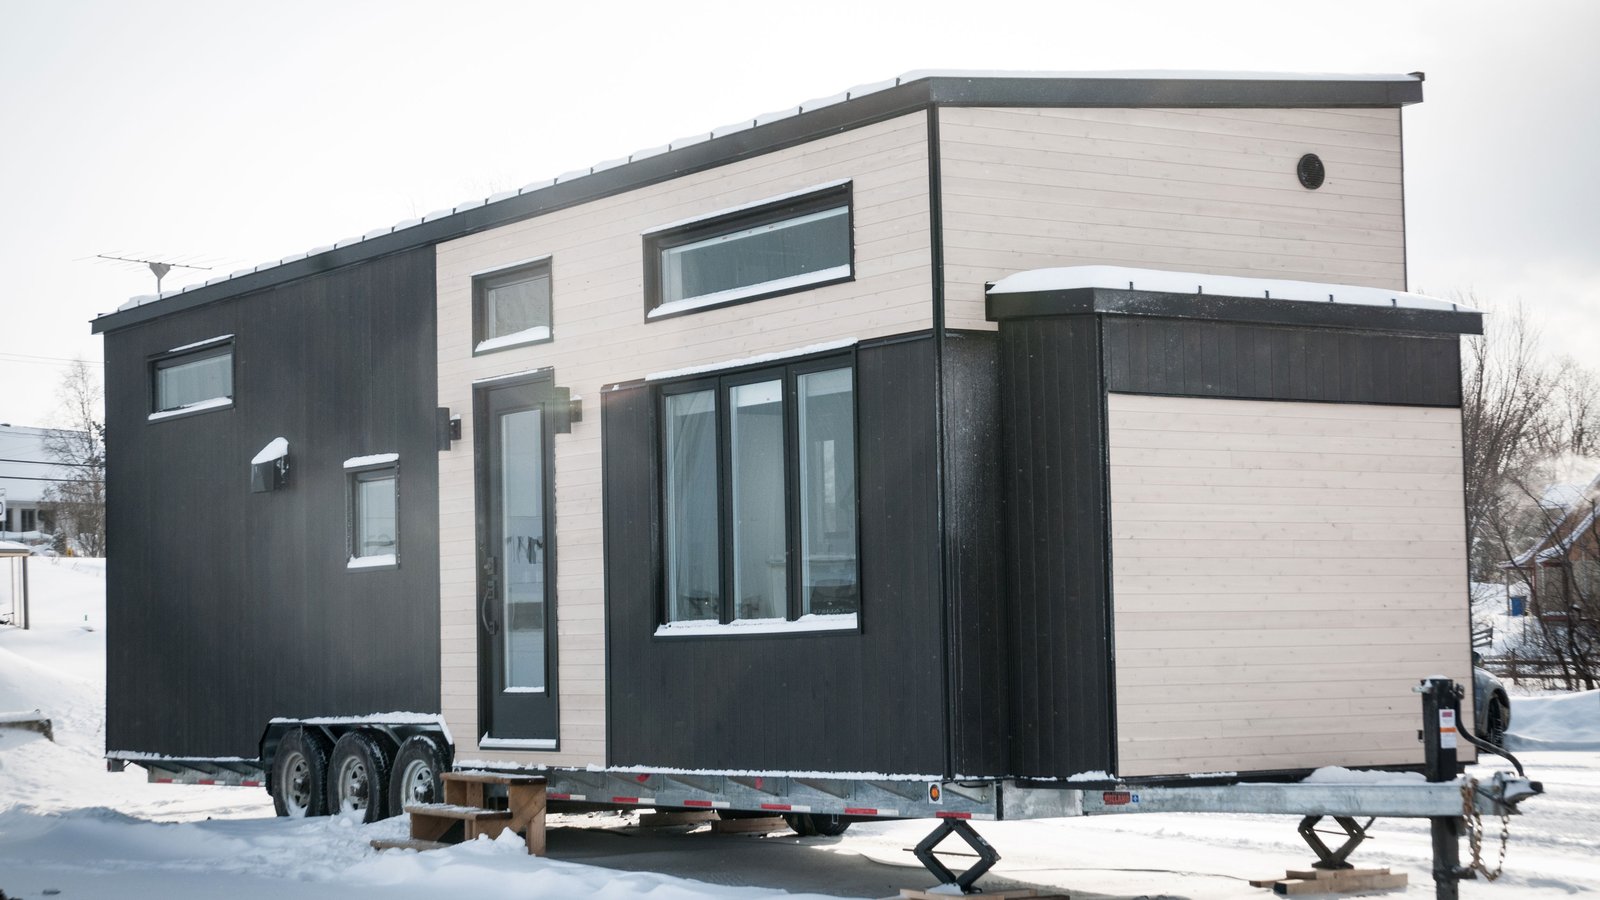 Découvrez cette superbe mini-maison construite au Québec!